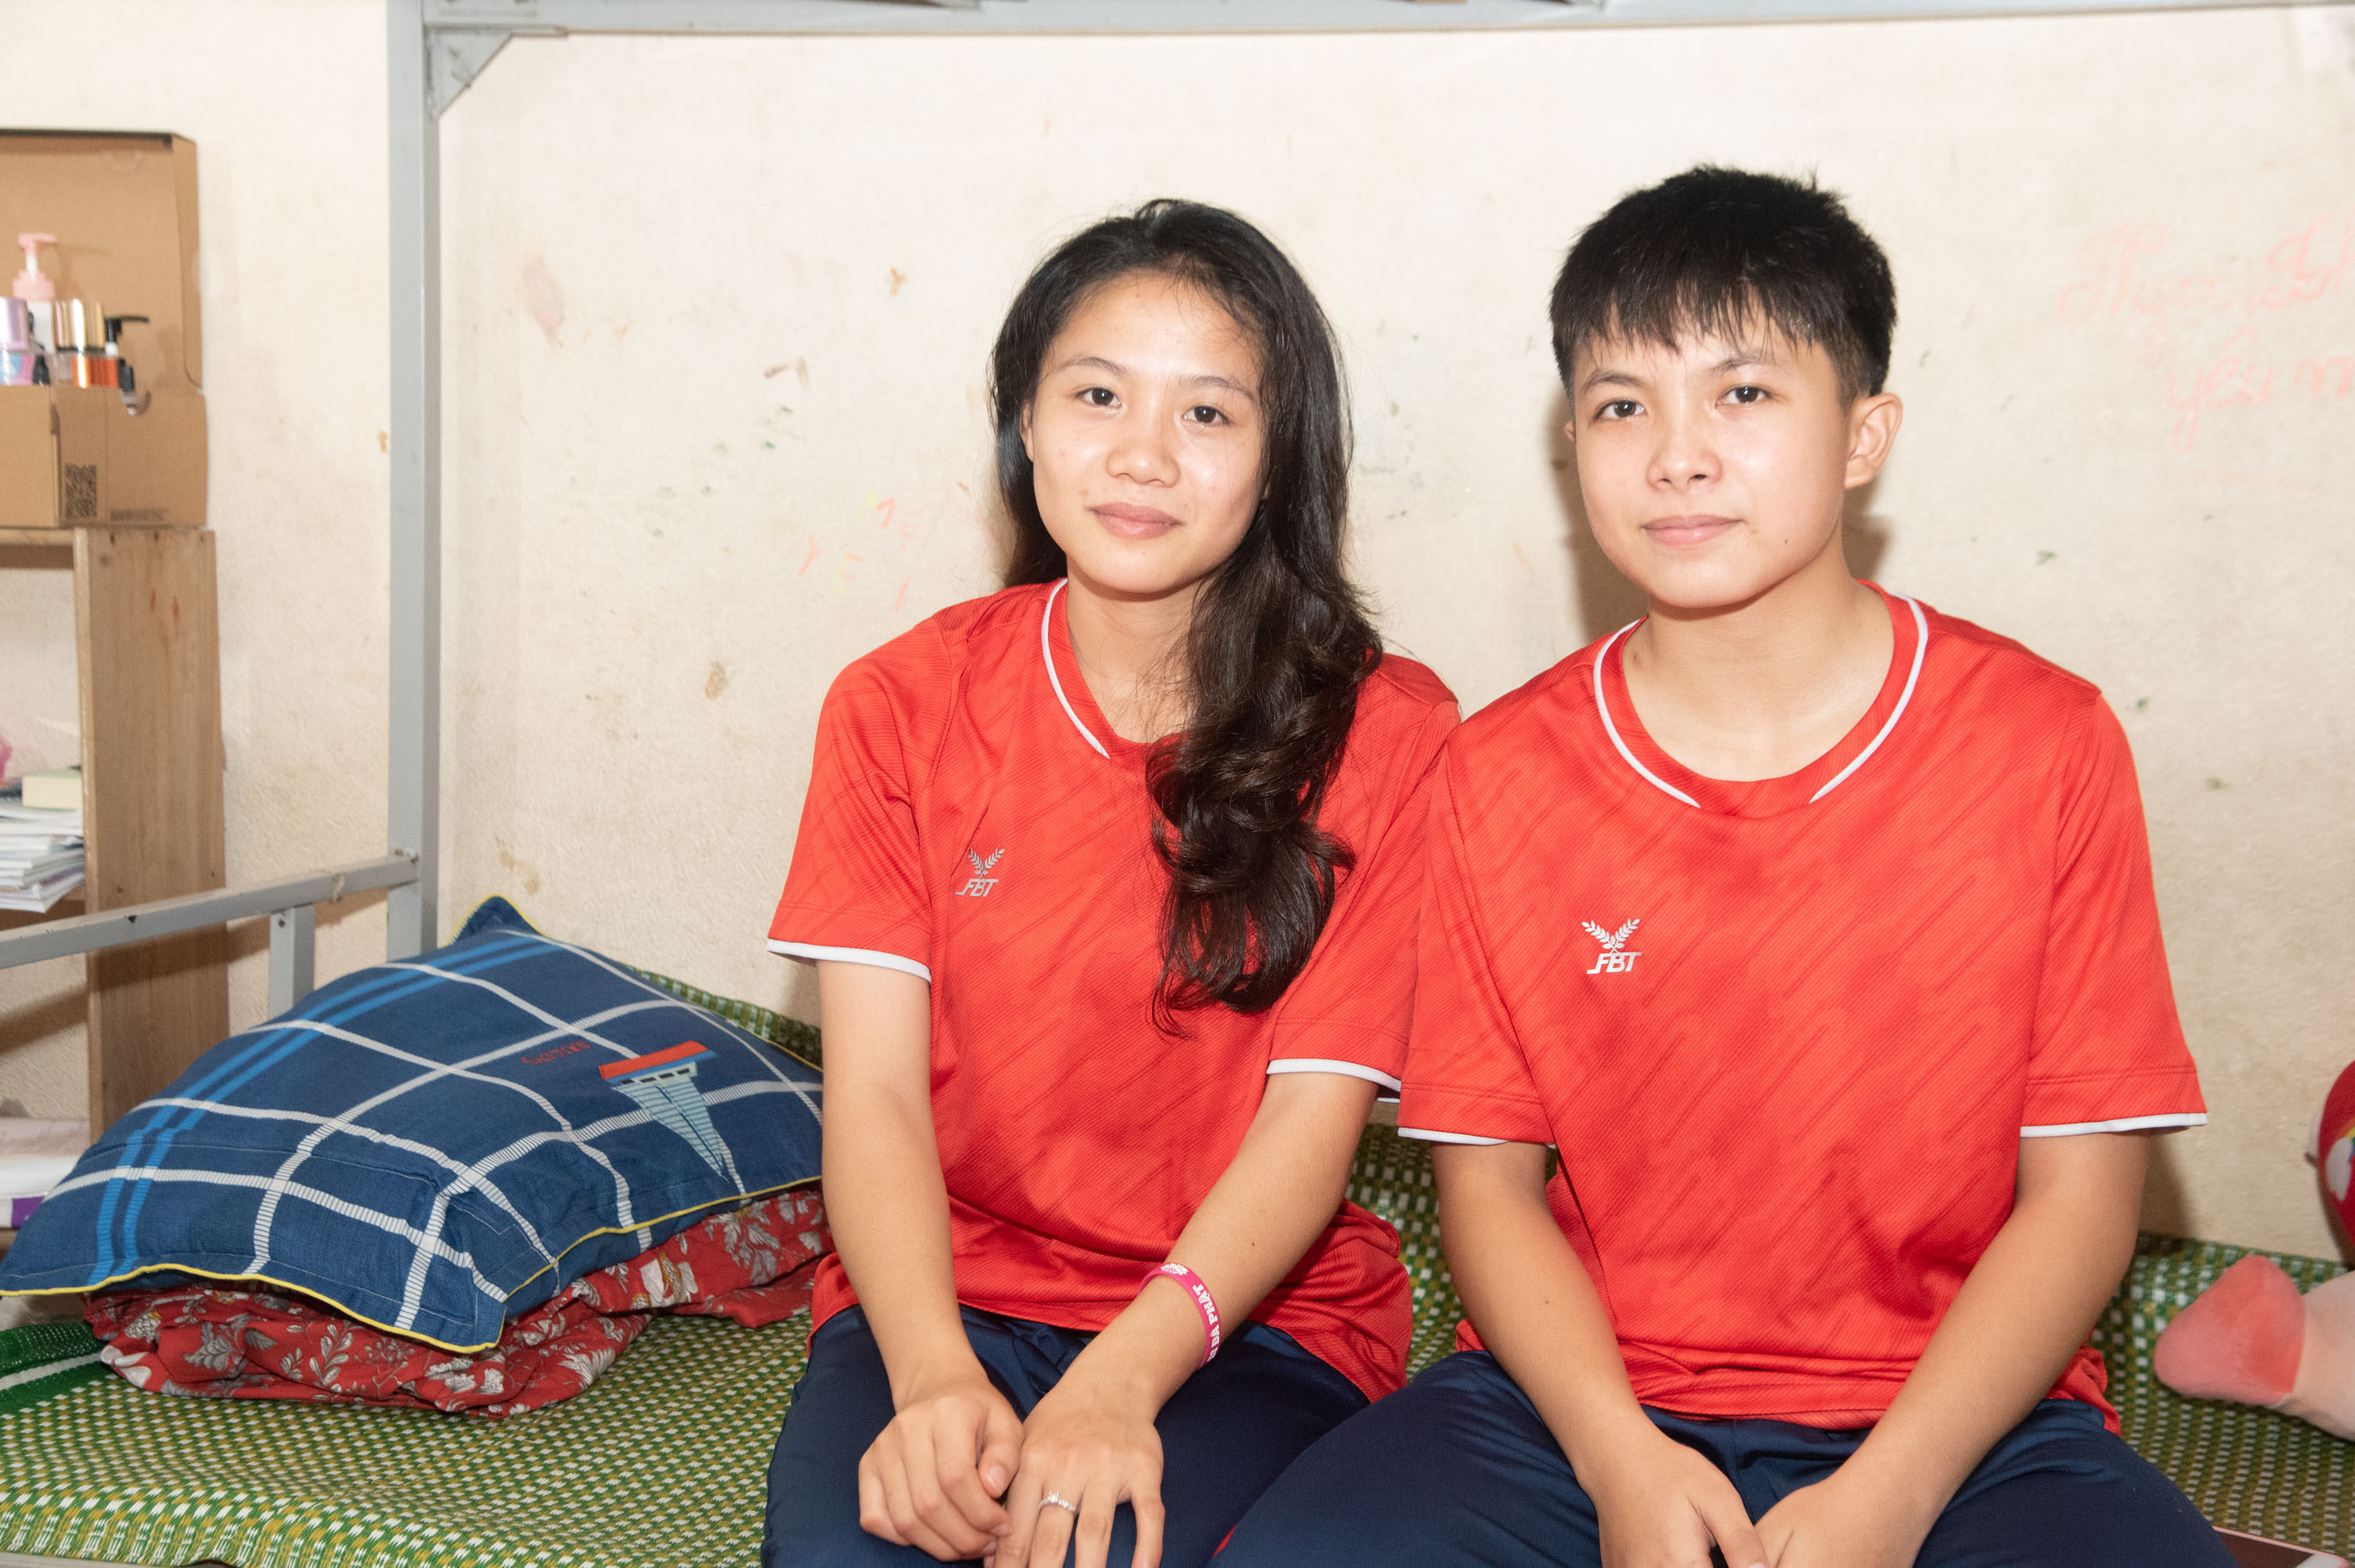 bna_Trương Thanh Thảo (trái) và Đào Thị Kim Oanh - bộ đôi vận động viên cầu mây trẻ triển vọng của Nghệ An (1).jpg